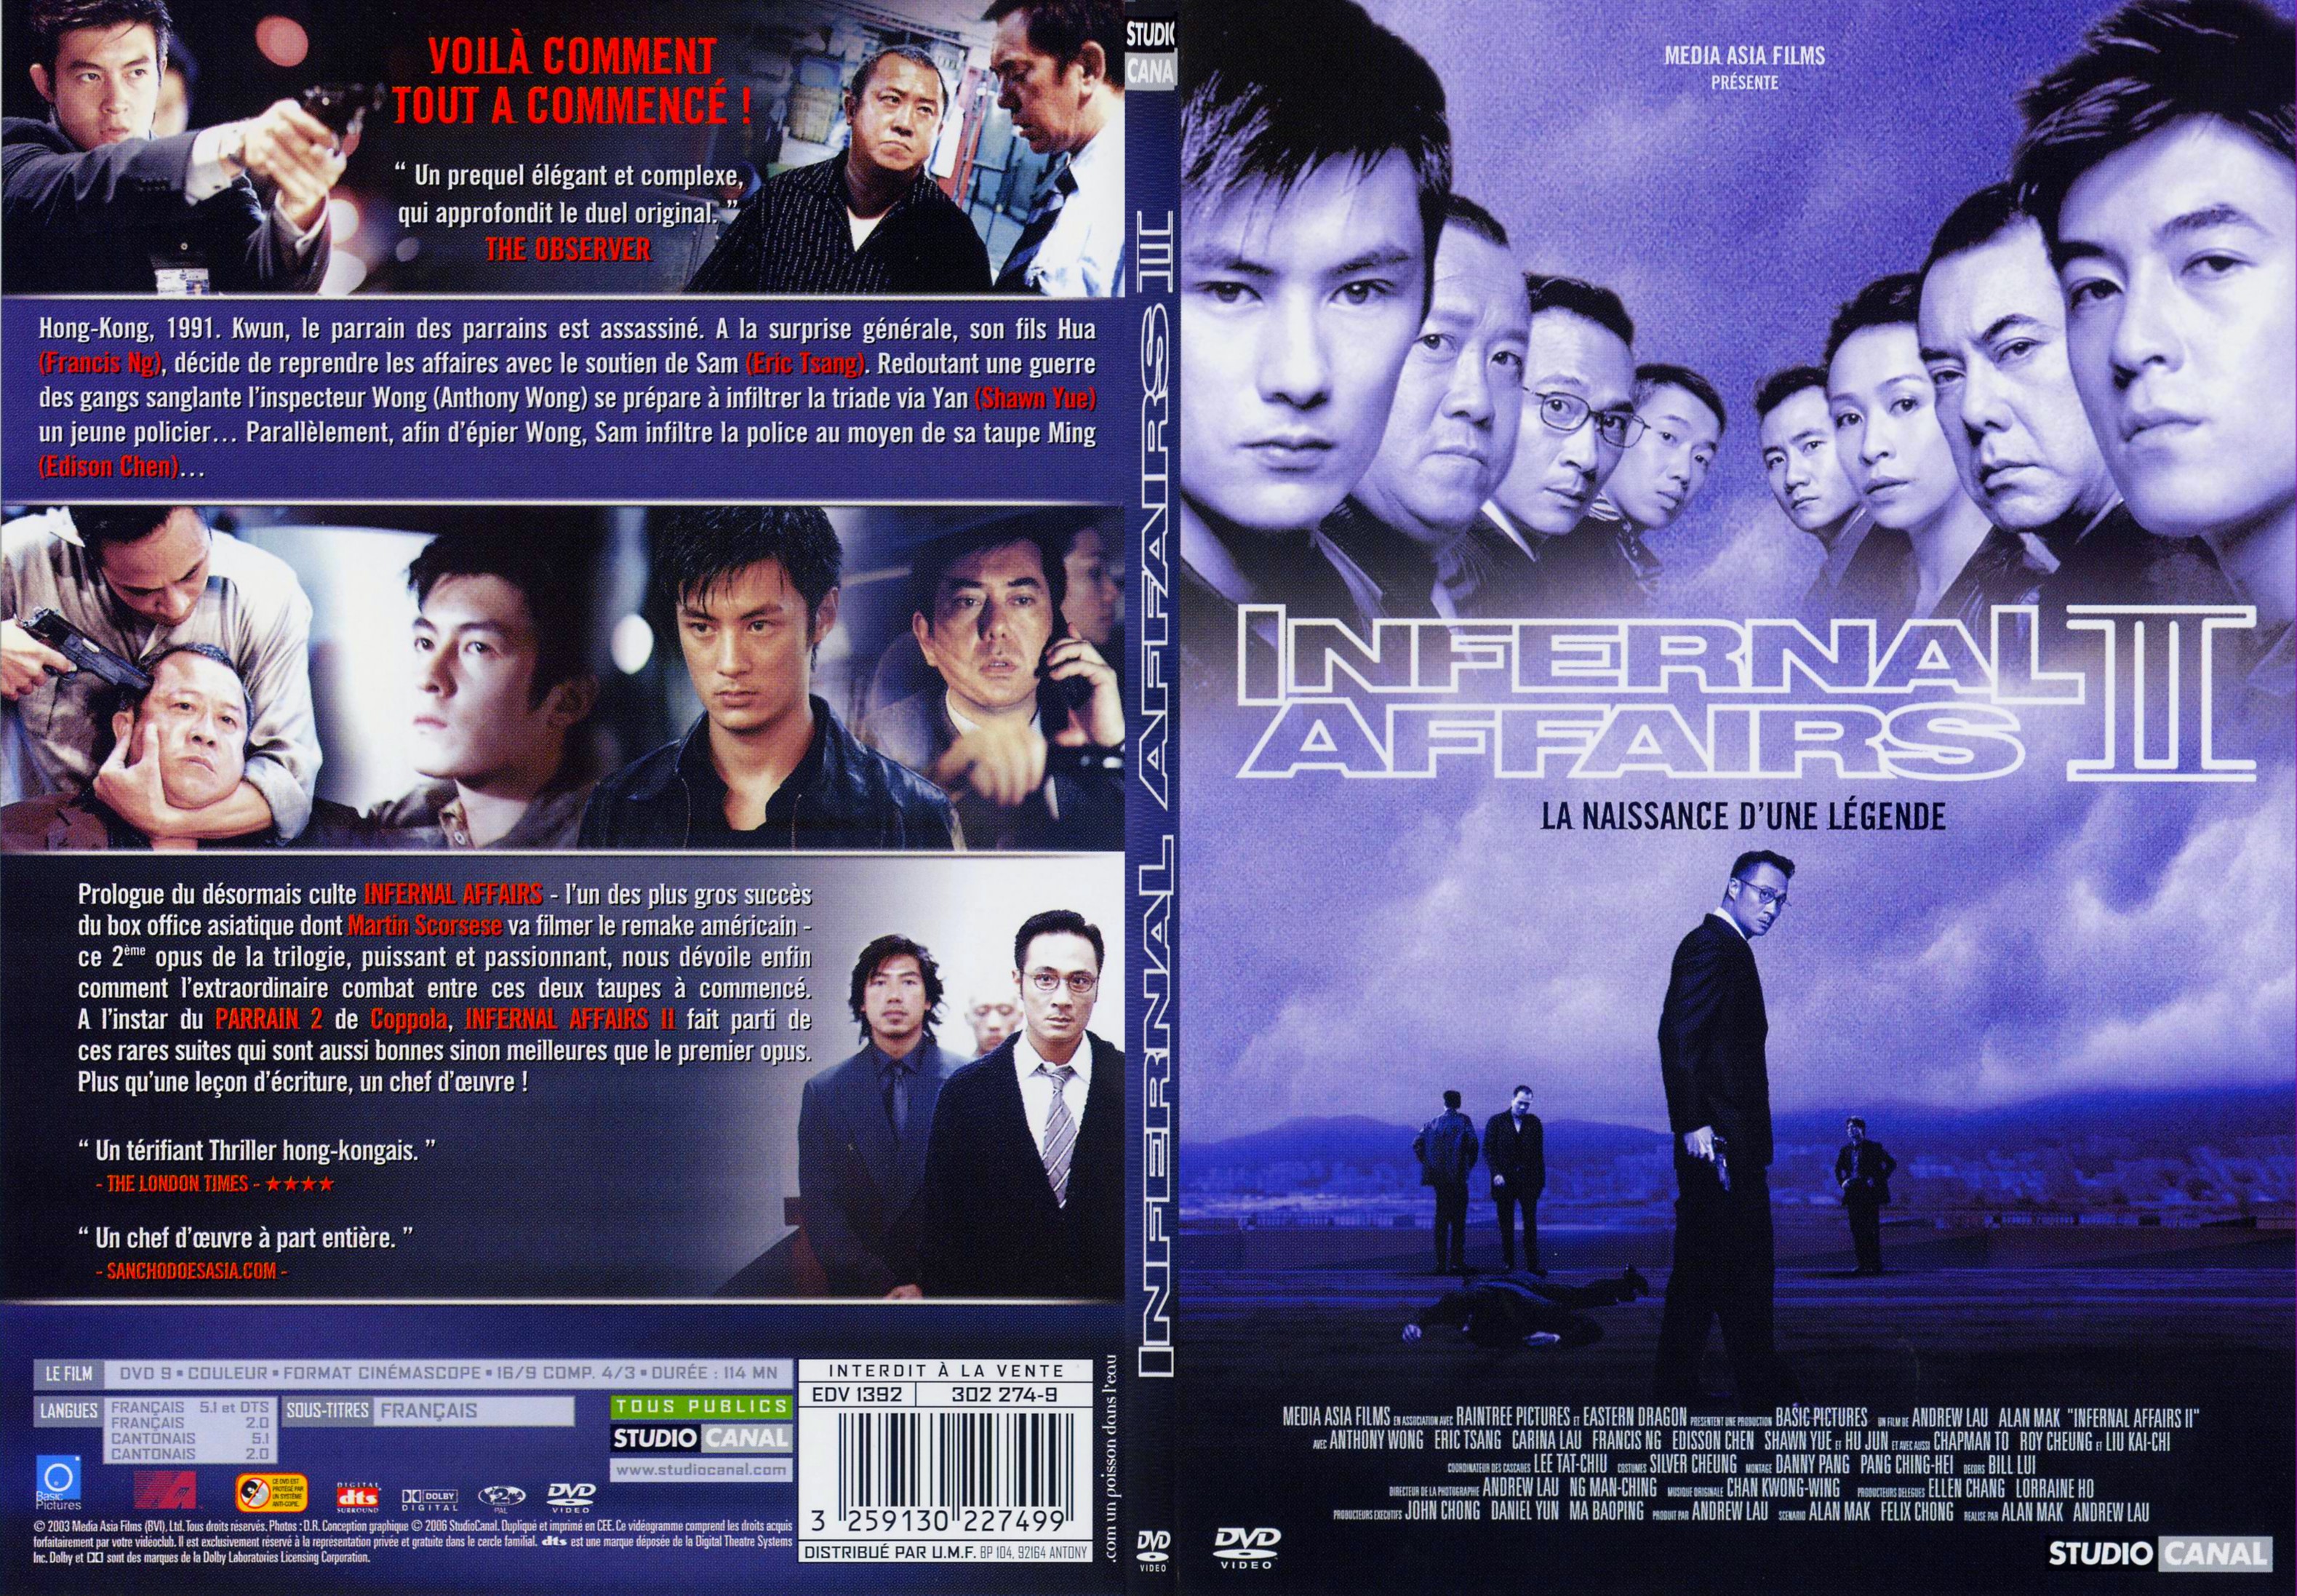 Jaquette DVD Infernal affairs 2 - SLIM